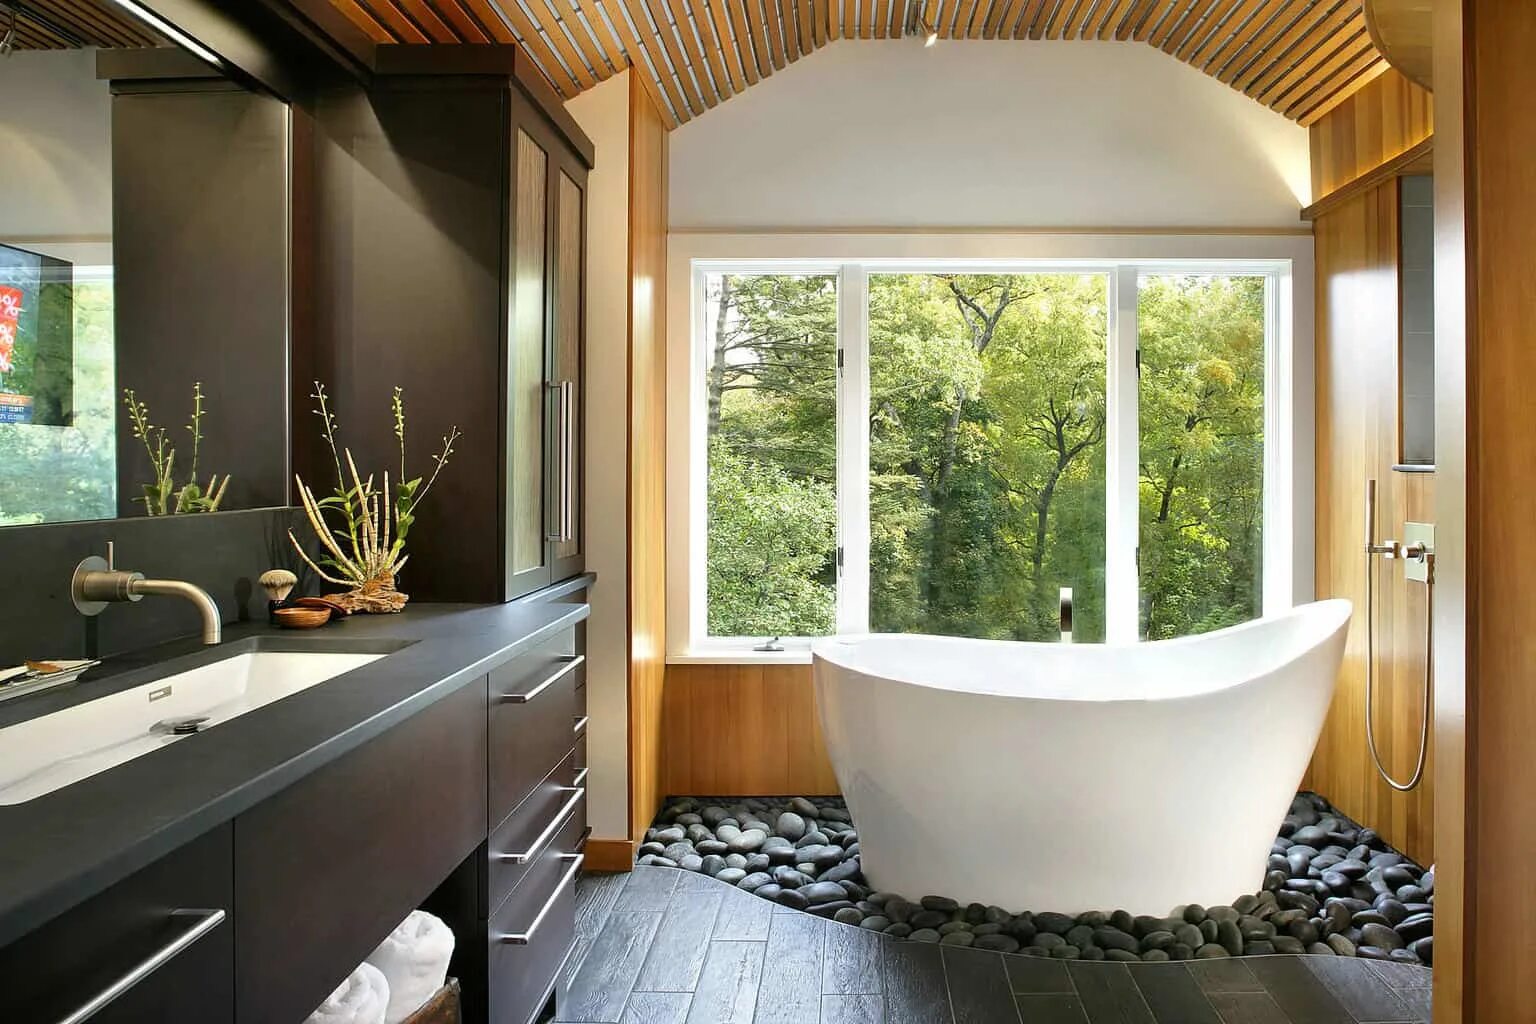 Ванная комната шире ванны. Ванная комната с окном. Интерьер ванной с окном. Небольшая ванная с окном. Ванная с панорамным окном.